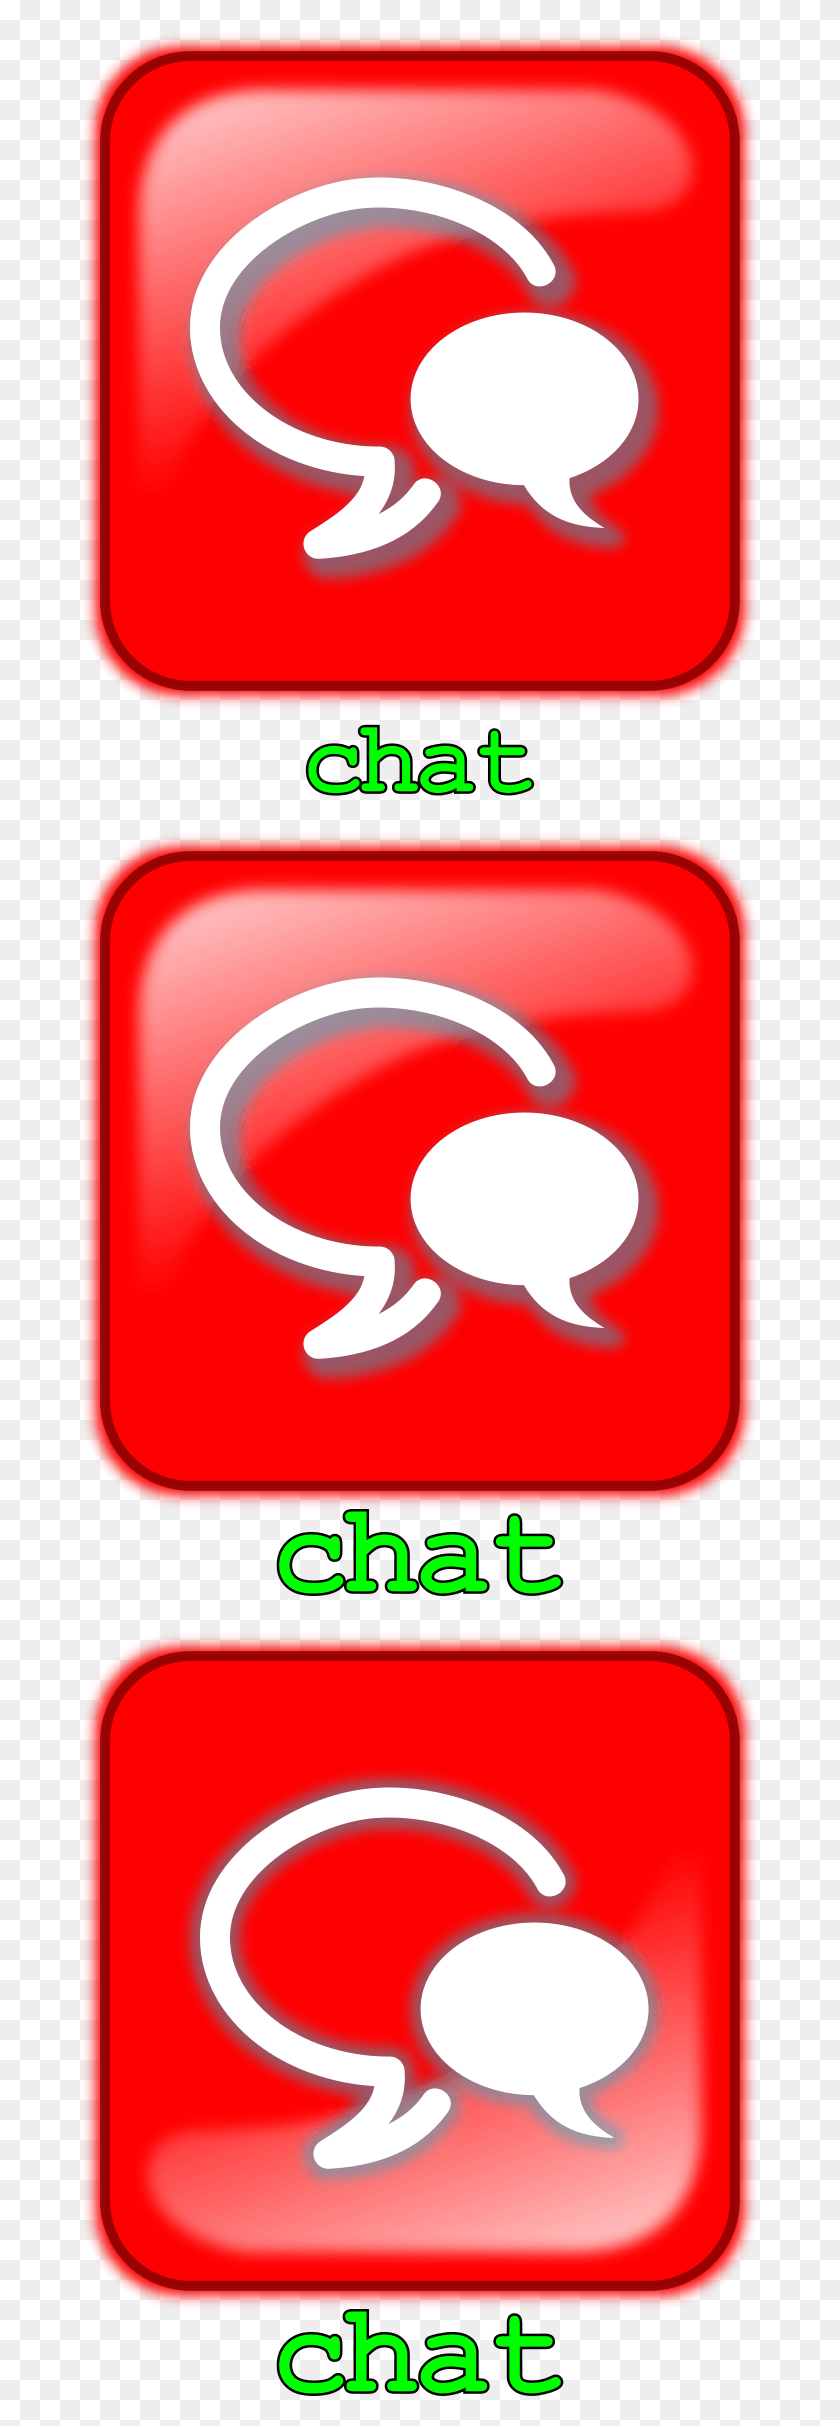 681x2366 Descargar Png / Diseño De Iconos Gratis De Botn Chat, Símbolo, Logotipo, Marca Registrada Hd Png